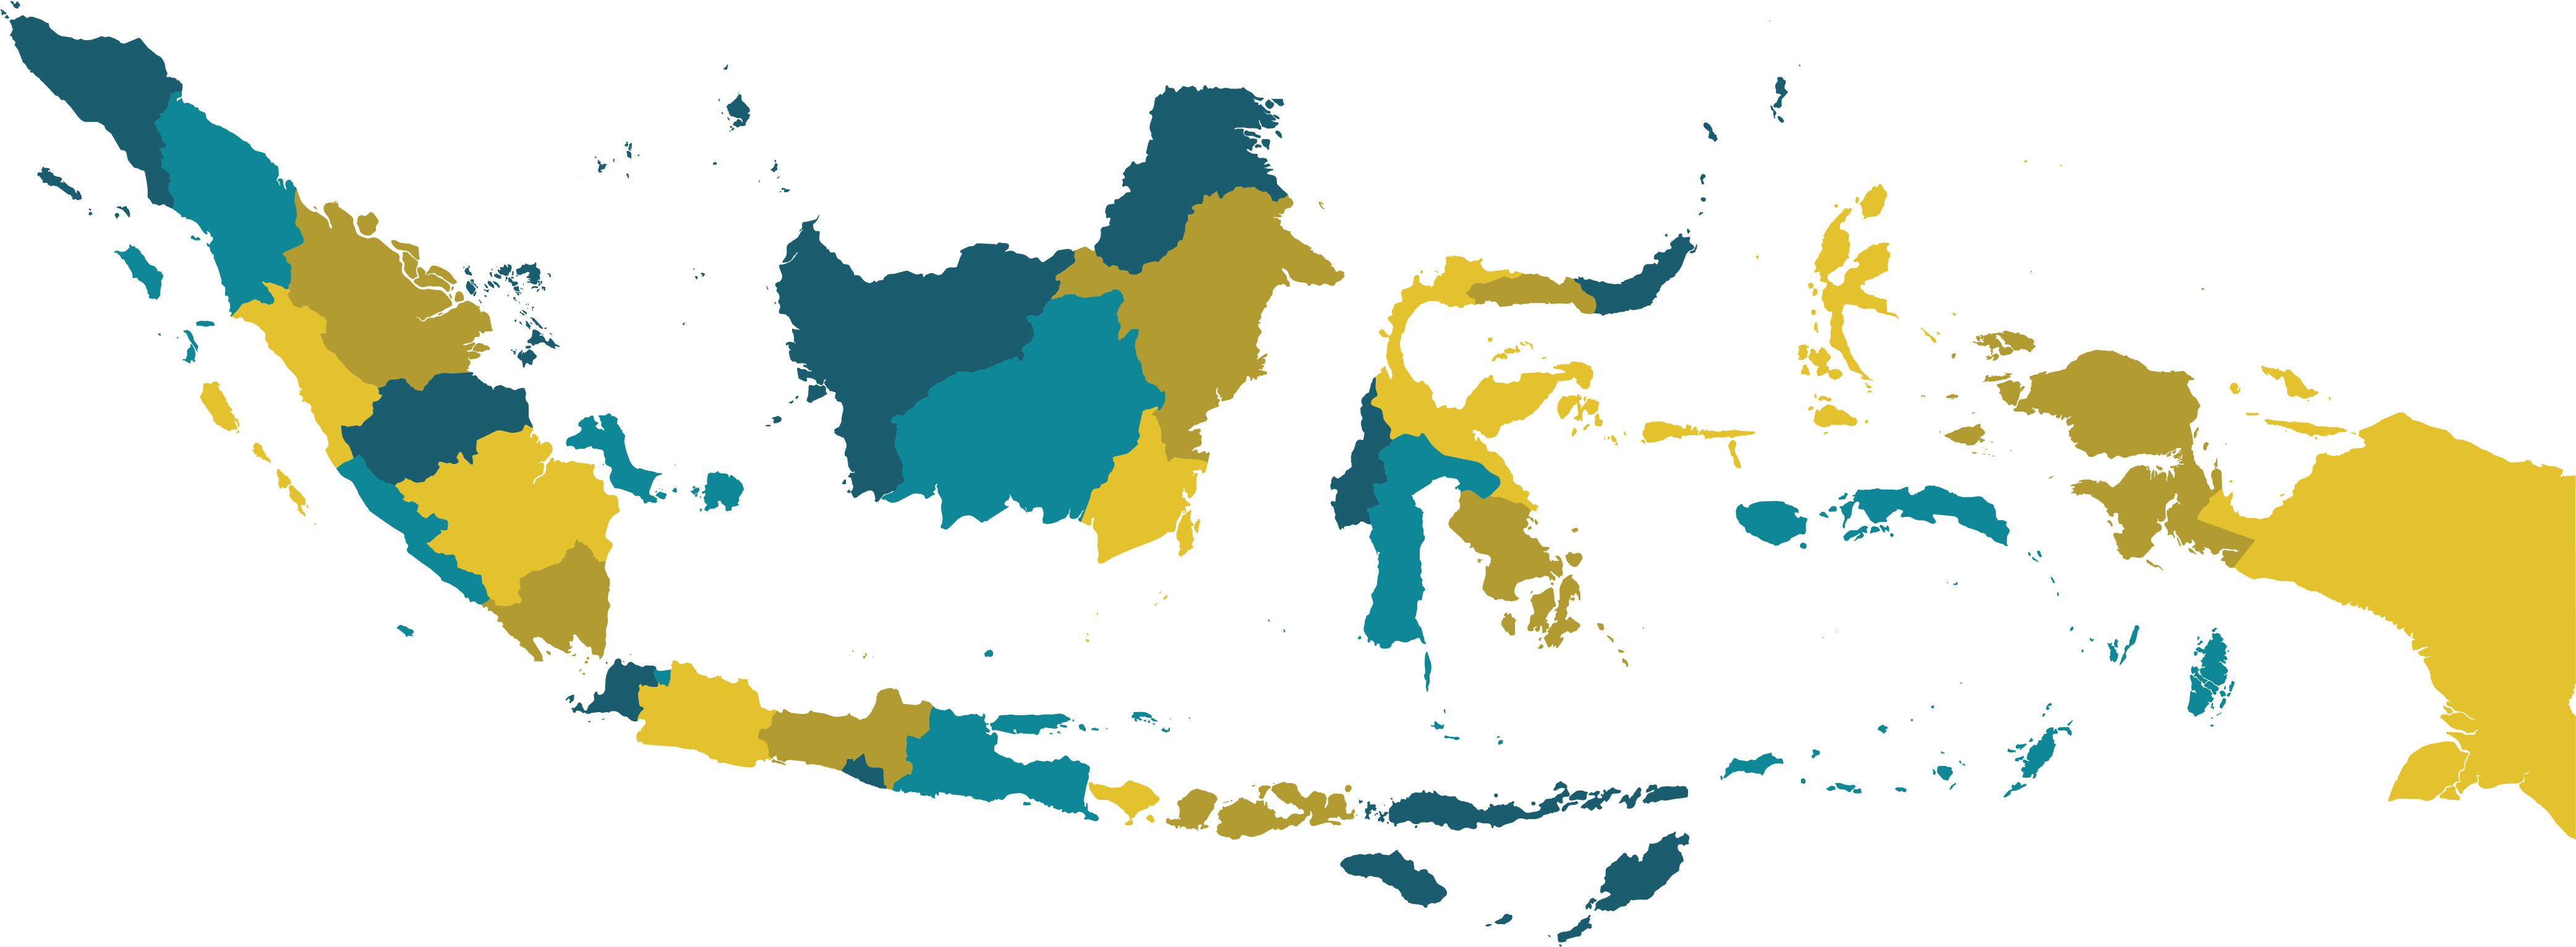 Peta Indonesia Png 